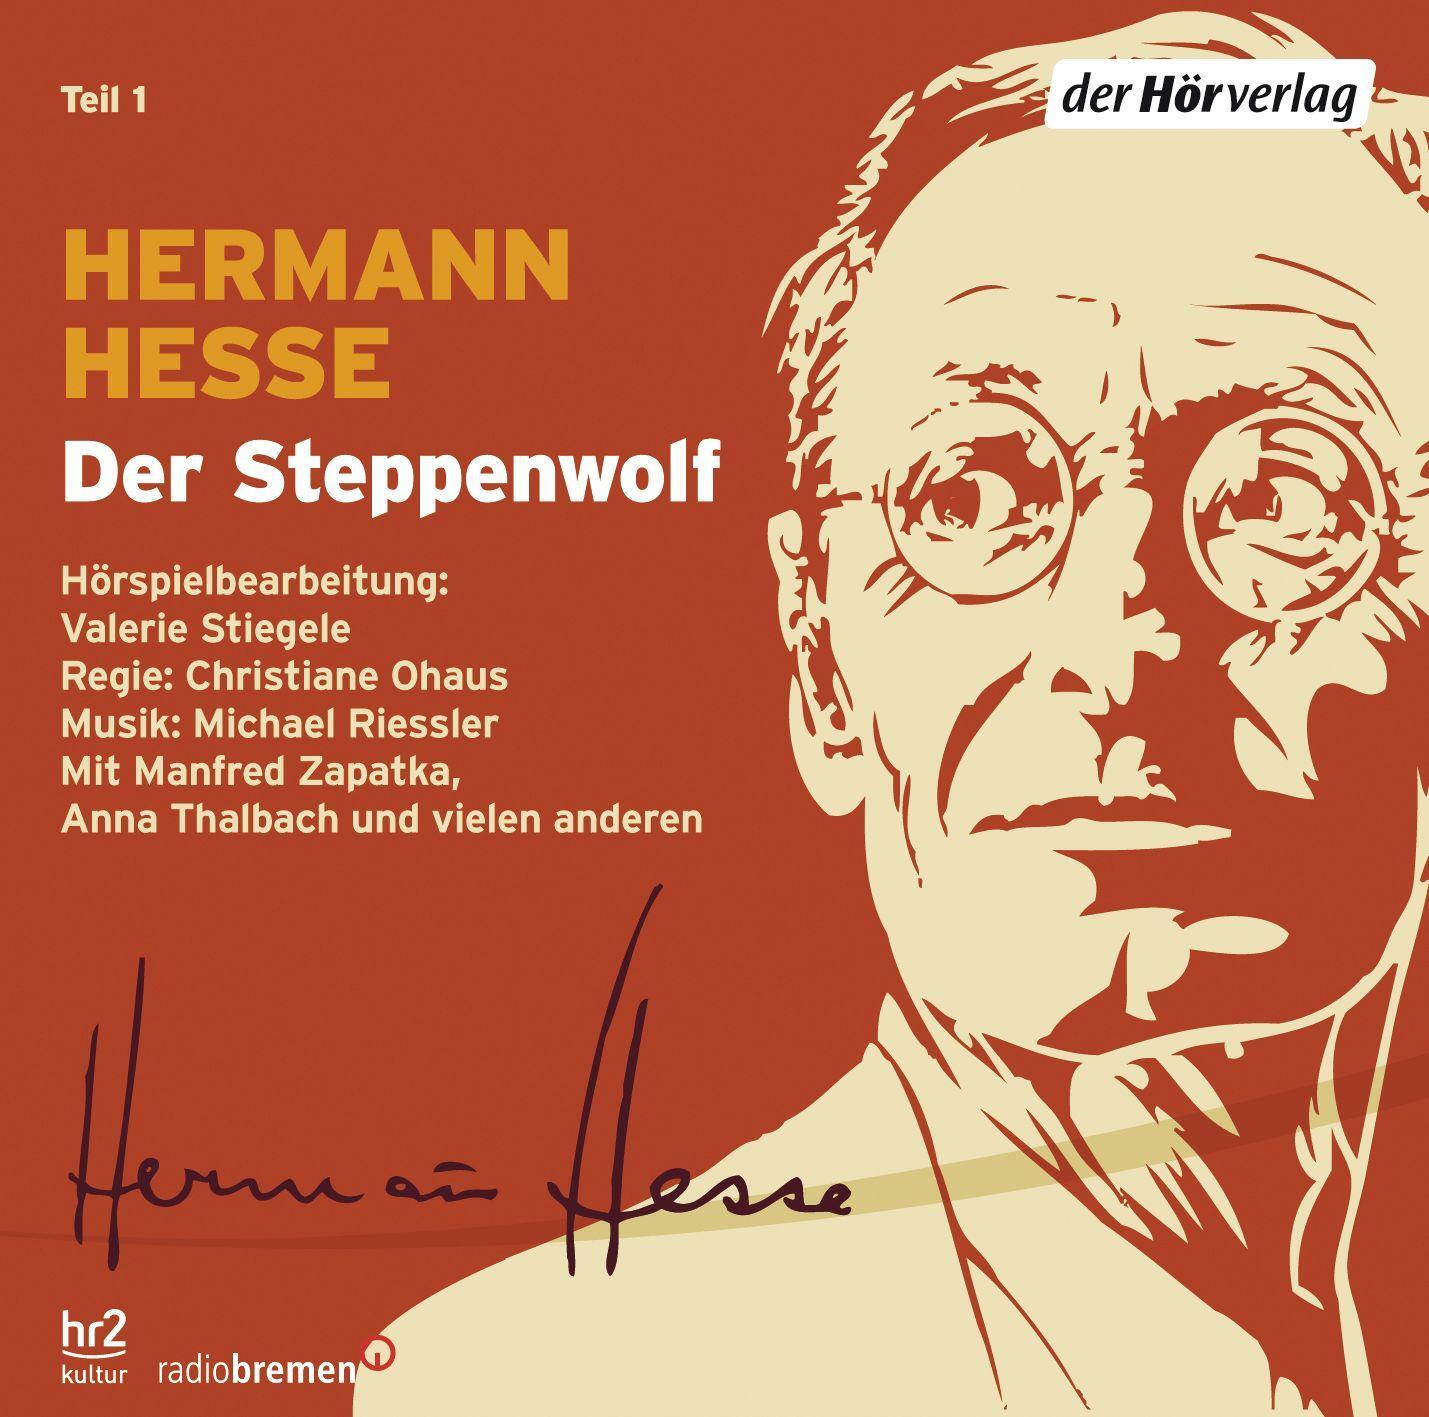 Bild: 9783867179010 | Die großen Romane | Hermann Hesse | Audio-CD | 14 Audio-CDs | Deutsch